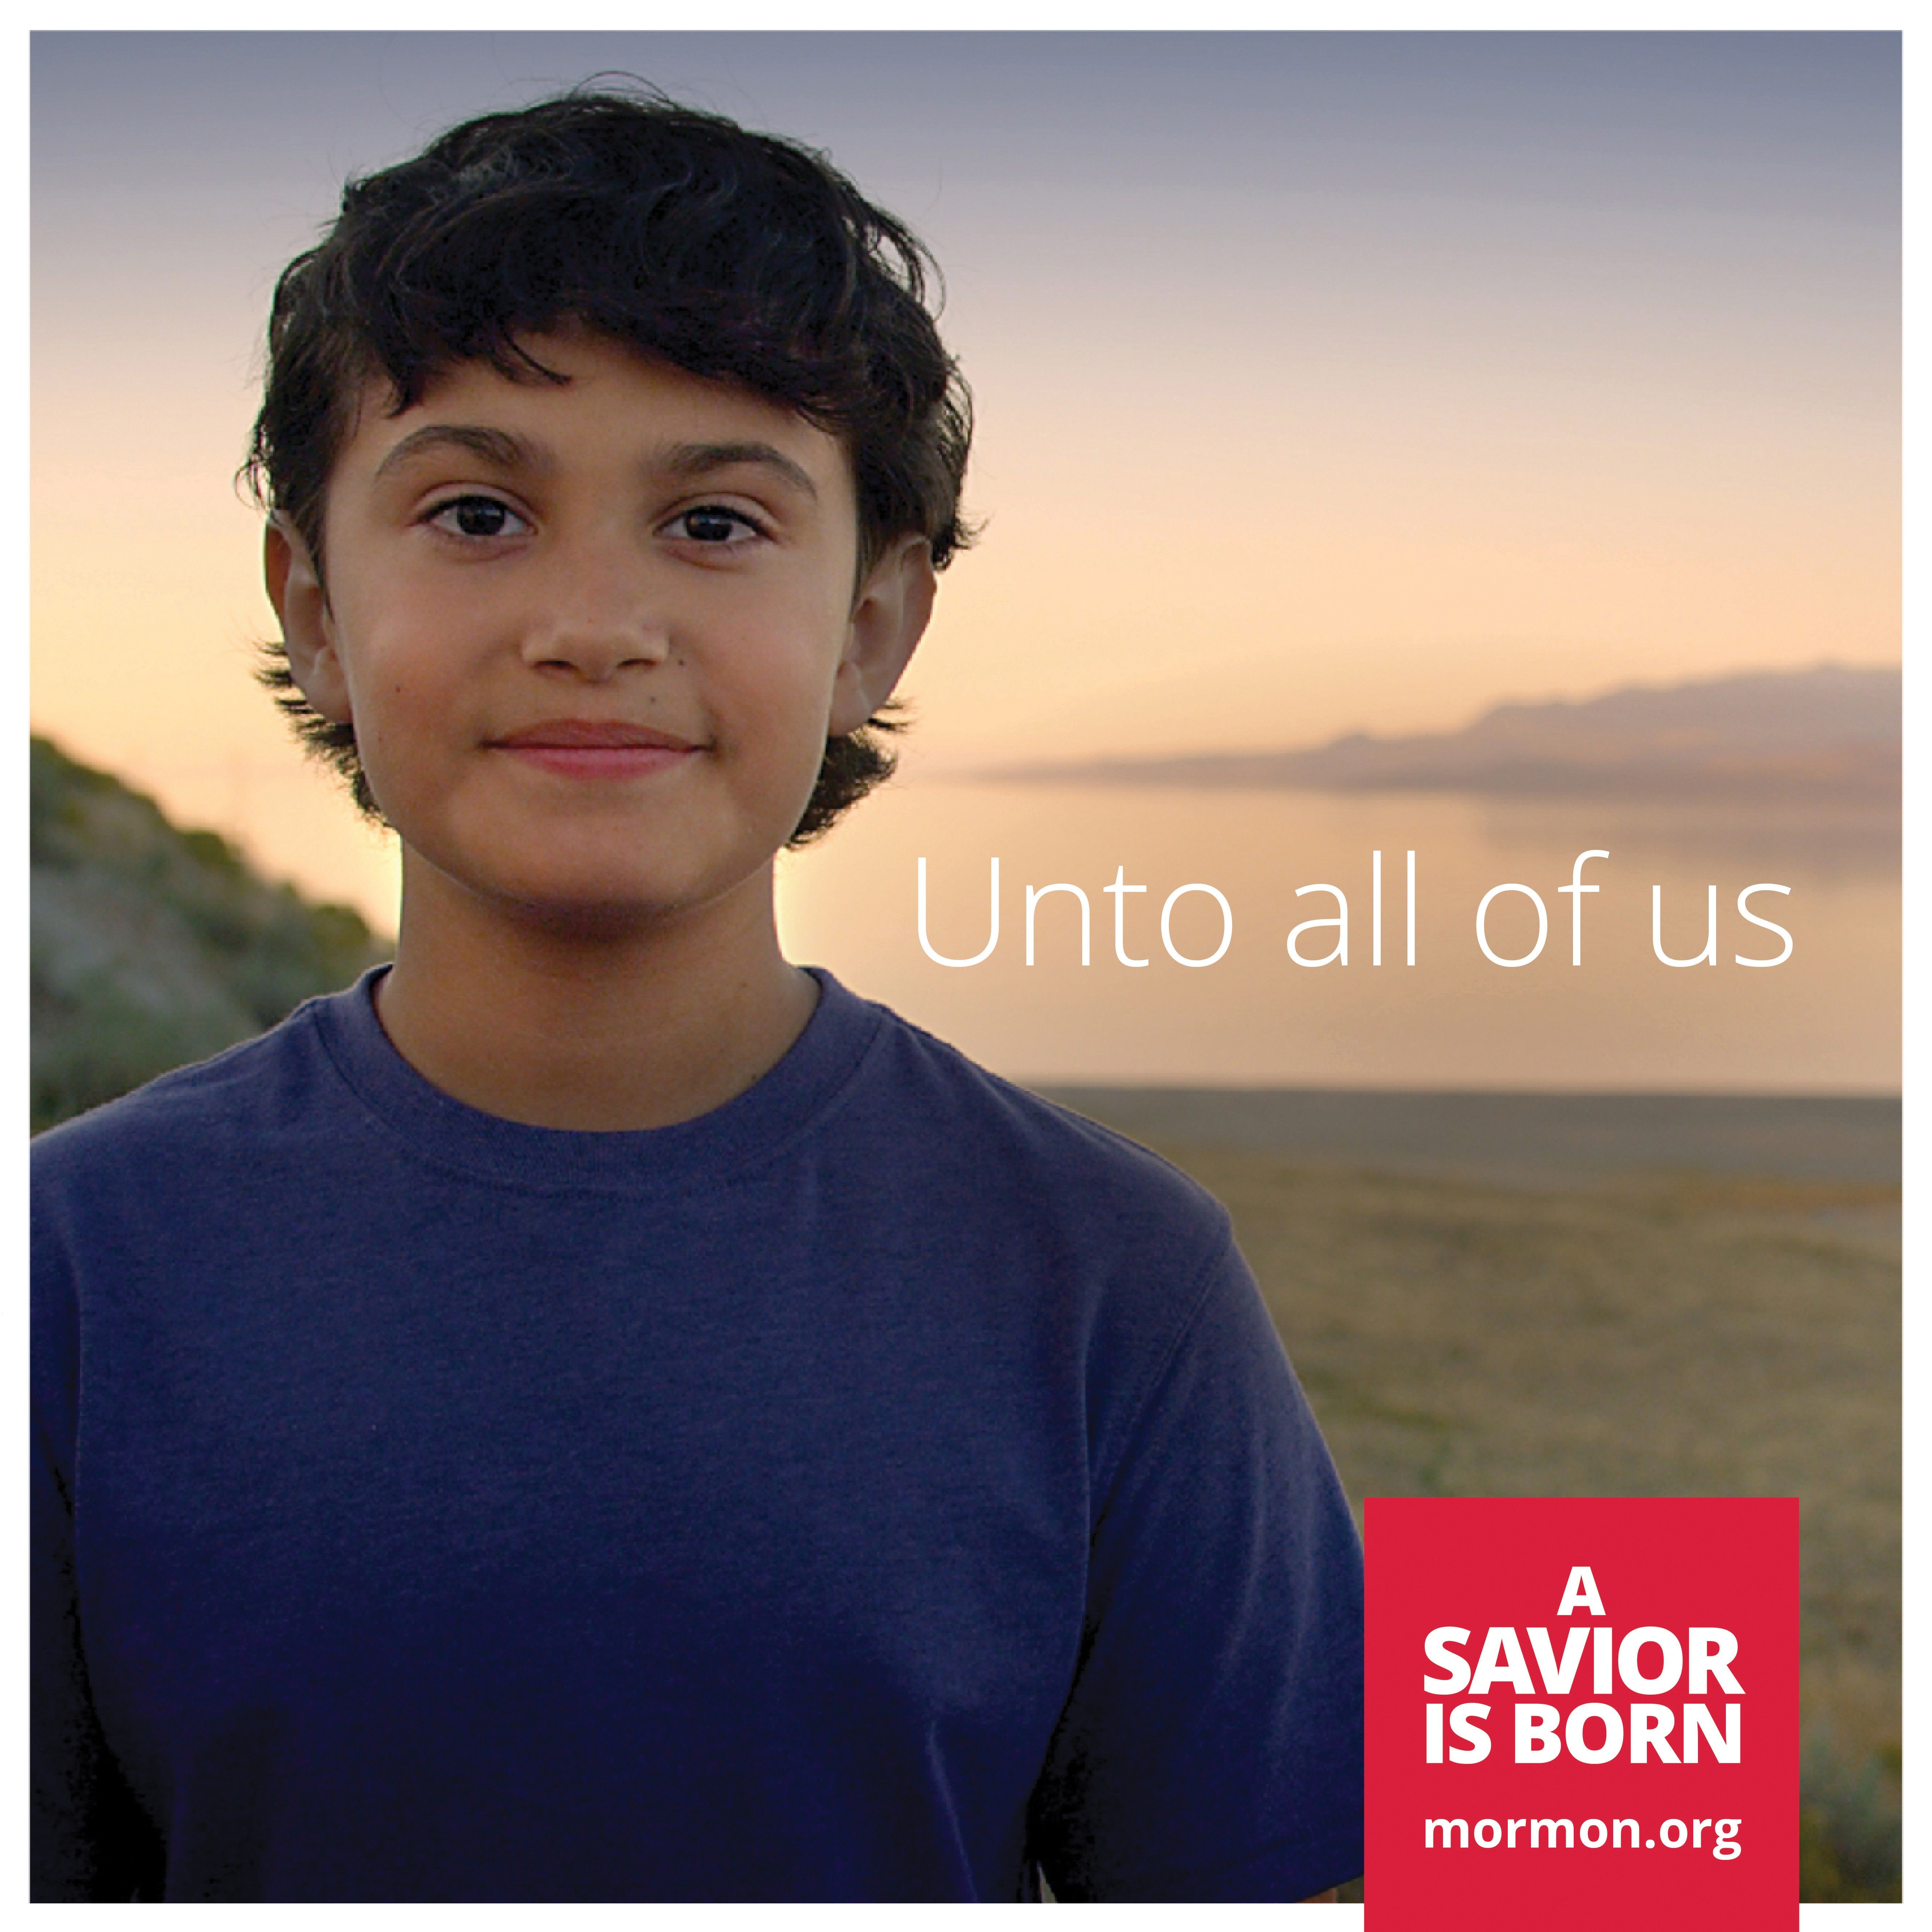 “Unto all of us.” —mormon.org, “A Savior Is Born”